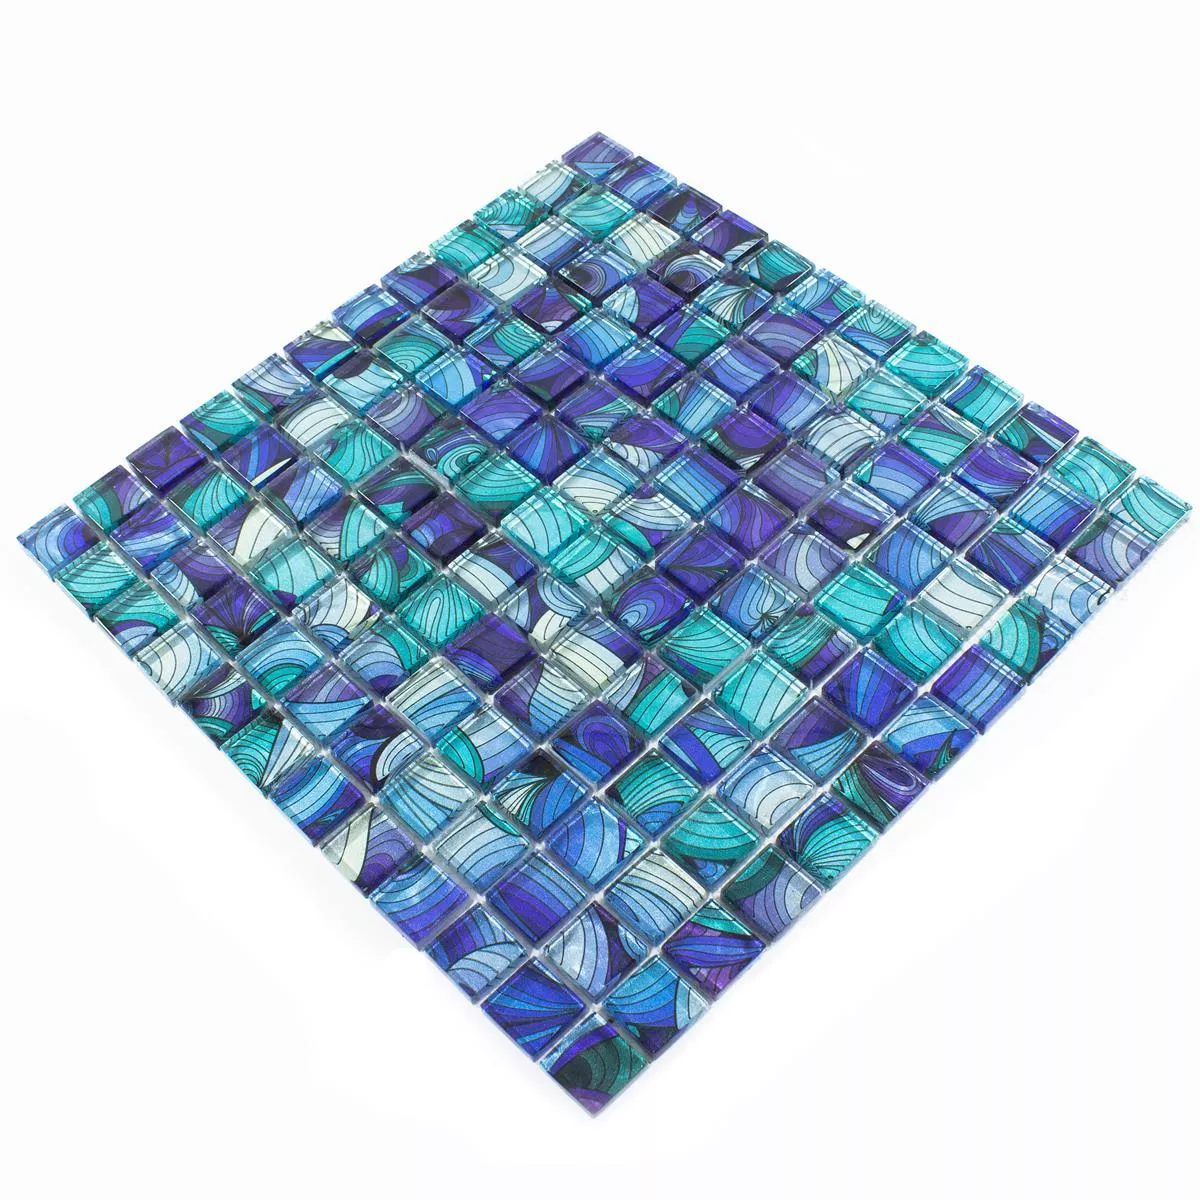 Glass Mosaic Tiles Atlantis Blue Cyan